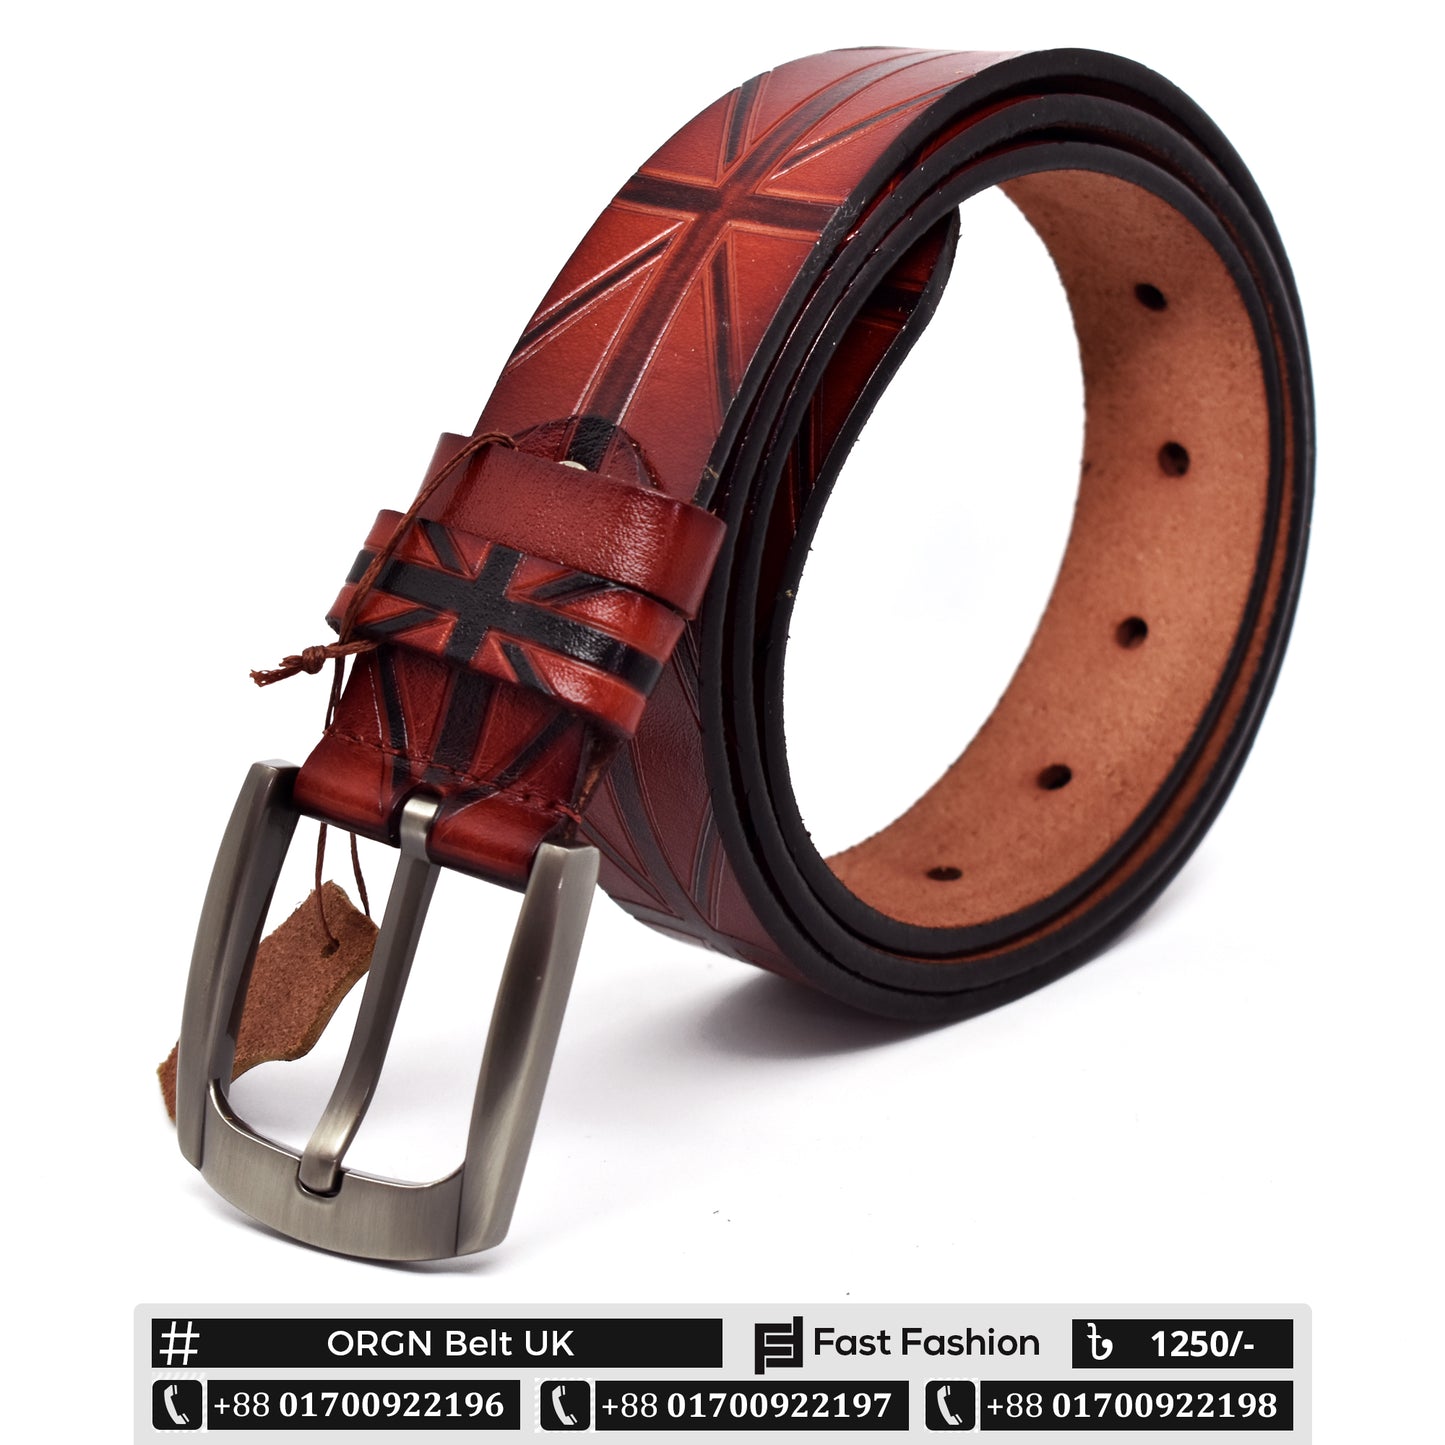 Stylish Premium Quality Original Leather UK Style Belt - ORGN Belt UK